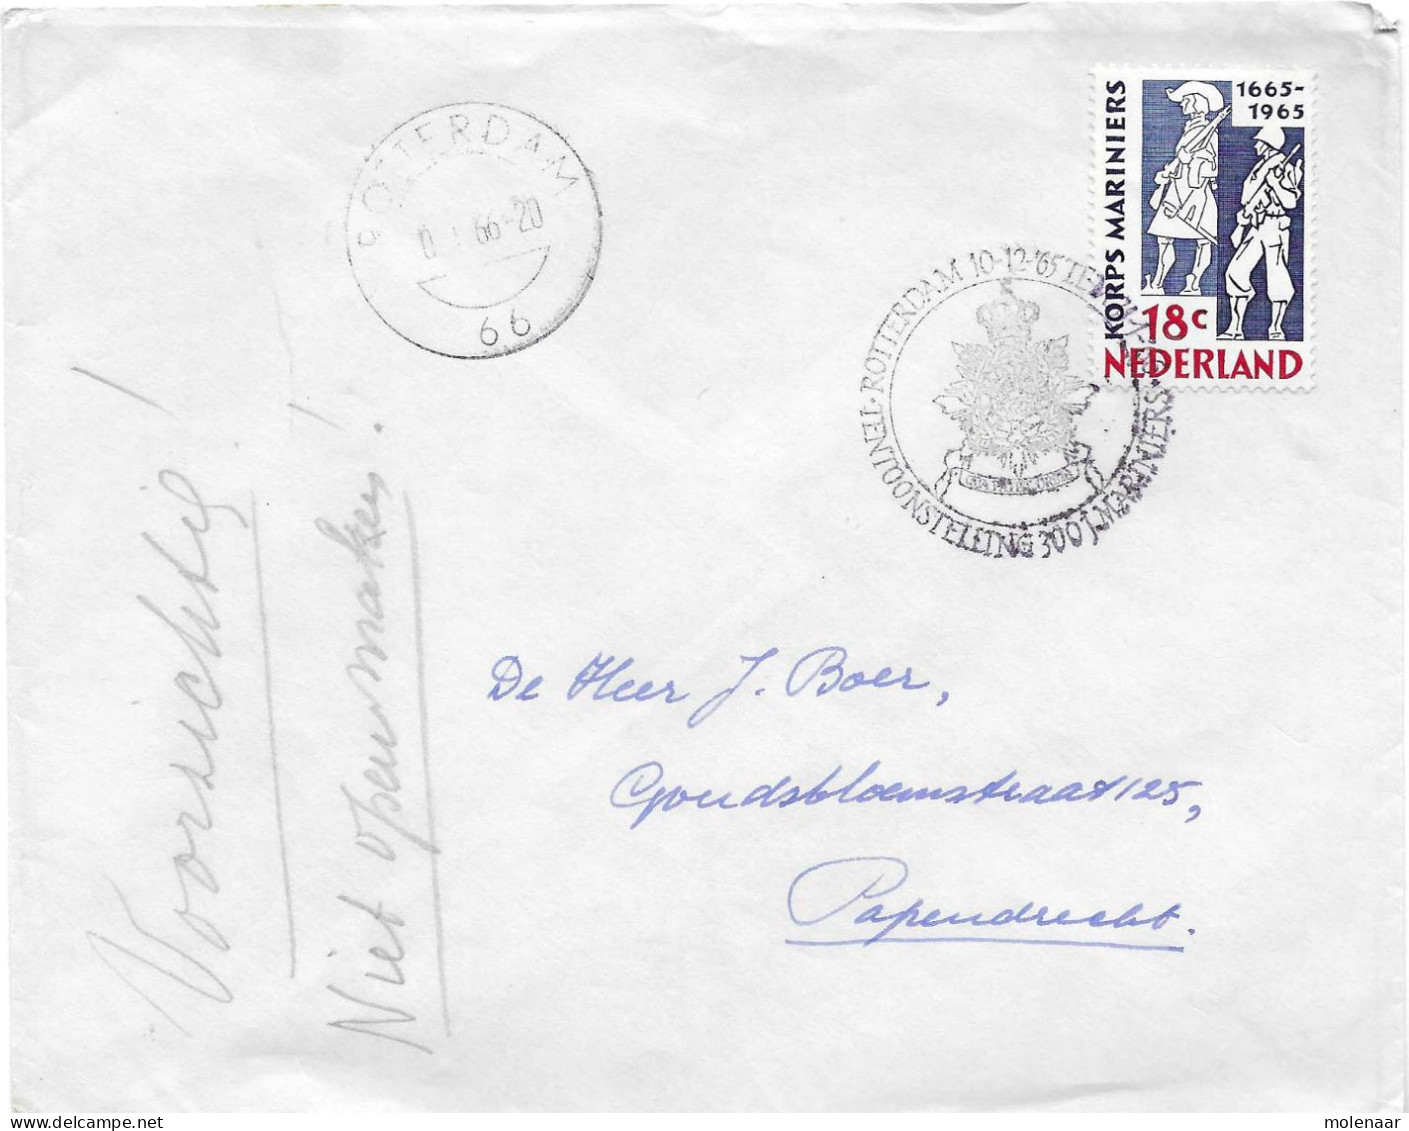 Postzegels > Europa > Nederland > Periode 1949-1980  > 1960-69 > Brief Uit 1965 100 Jaar Korps Mariniers (17716) - Covers & Documents